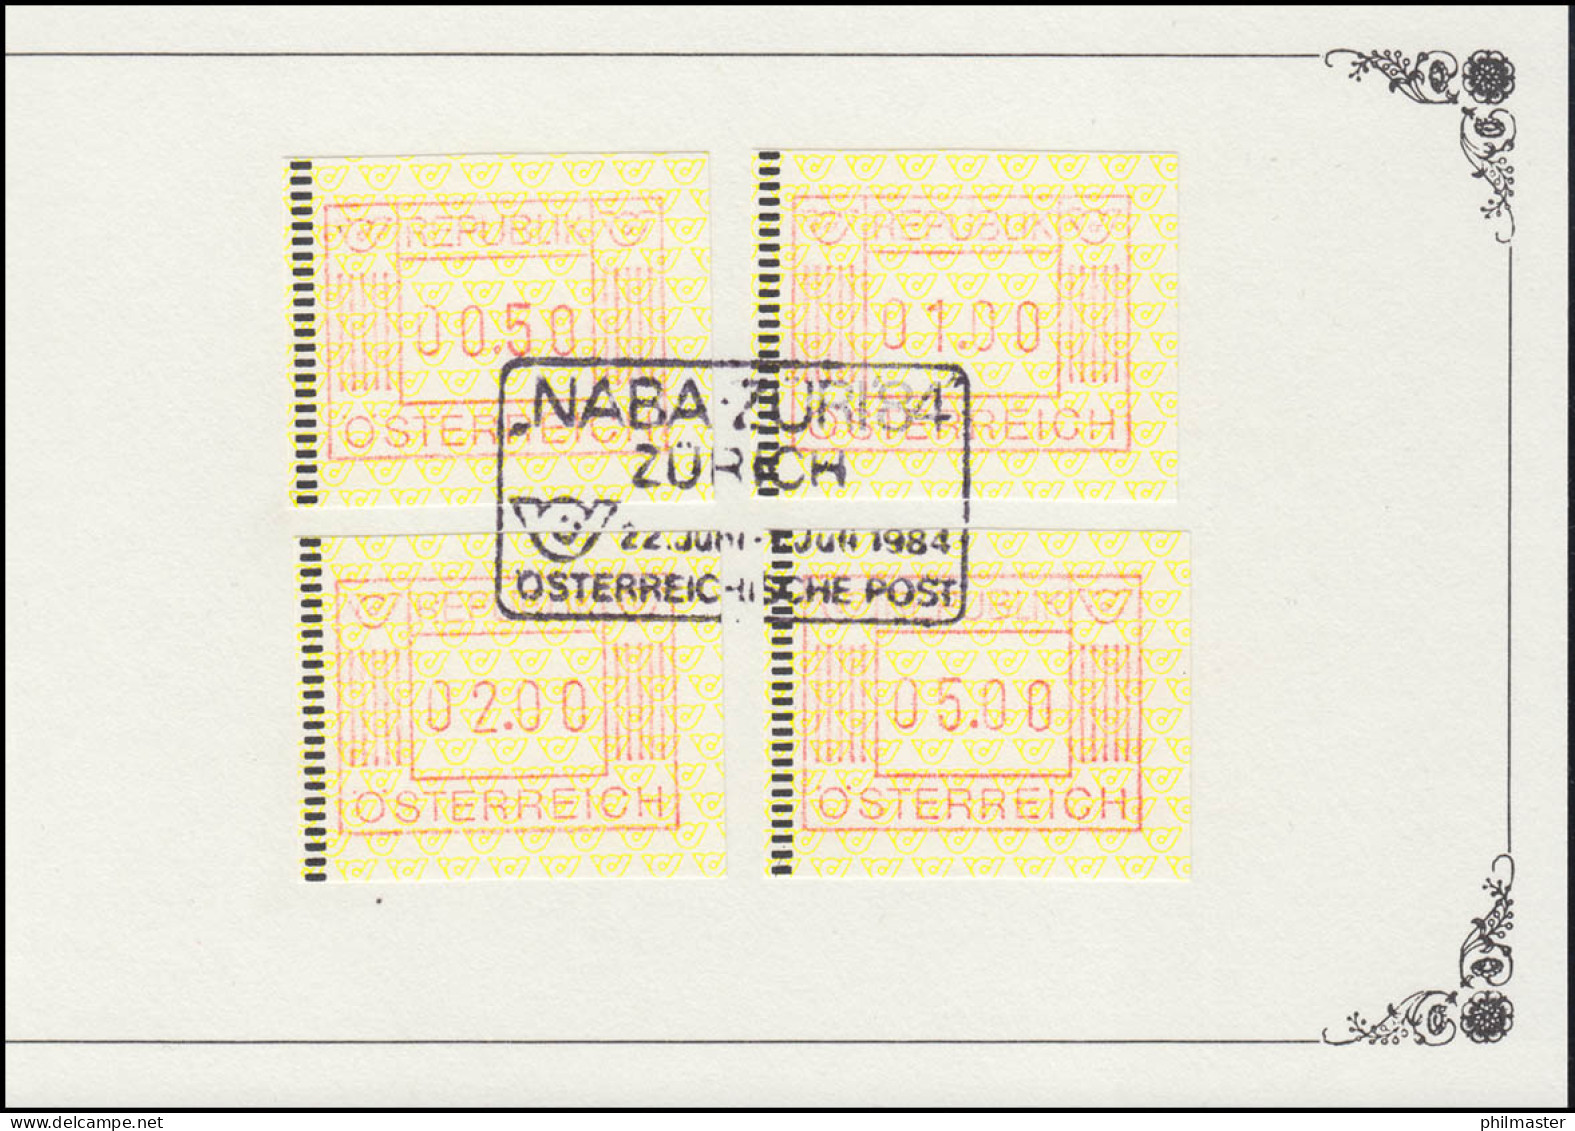 Österreich NABA-Souvenier Mit 4 ATM Passender SSt NABA Österreichische Post 1984 - Machine Labels [ATM]